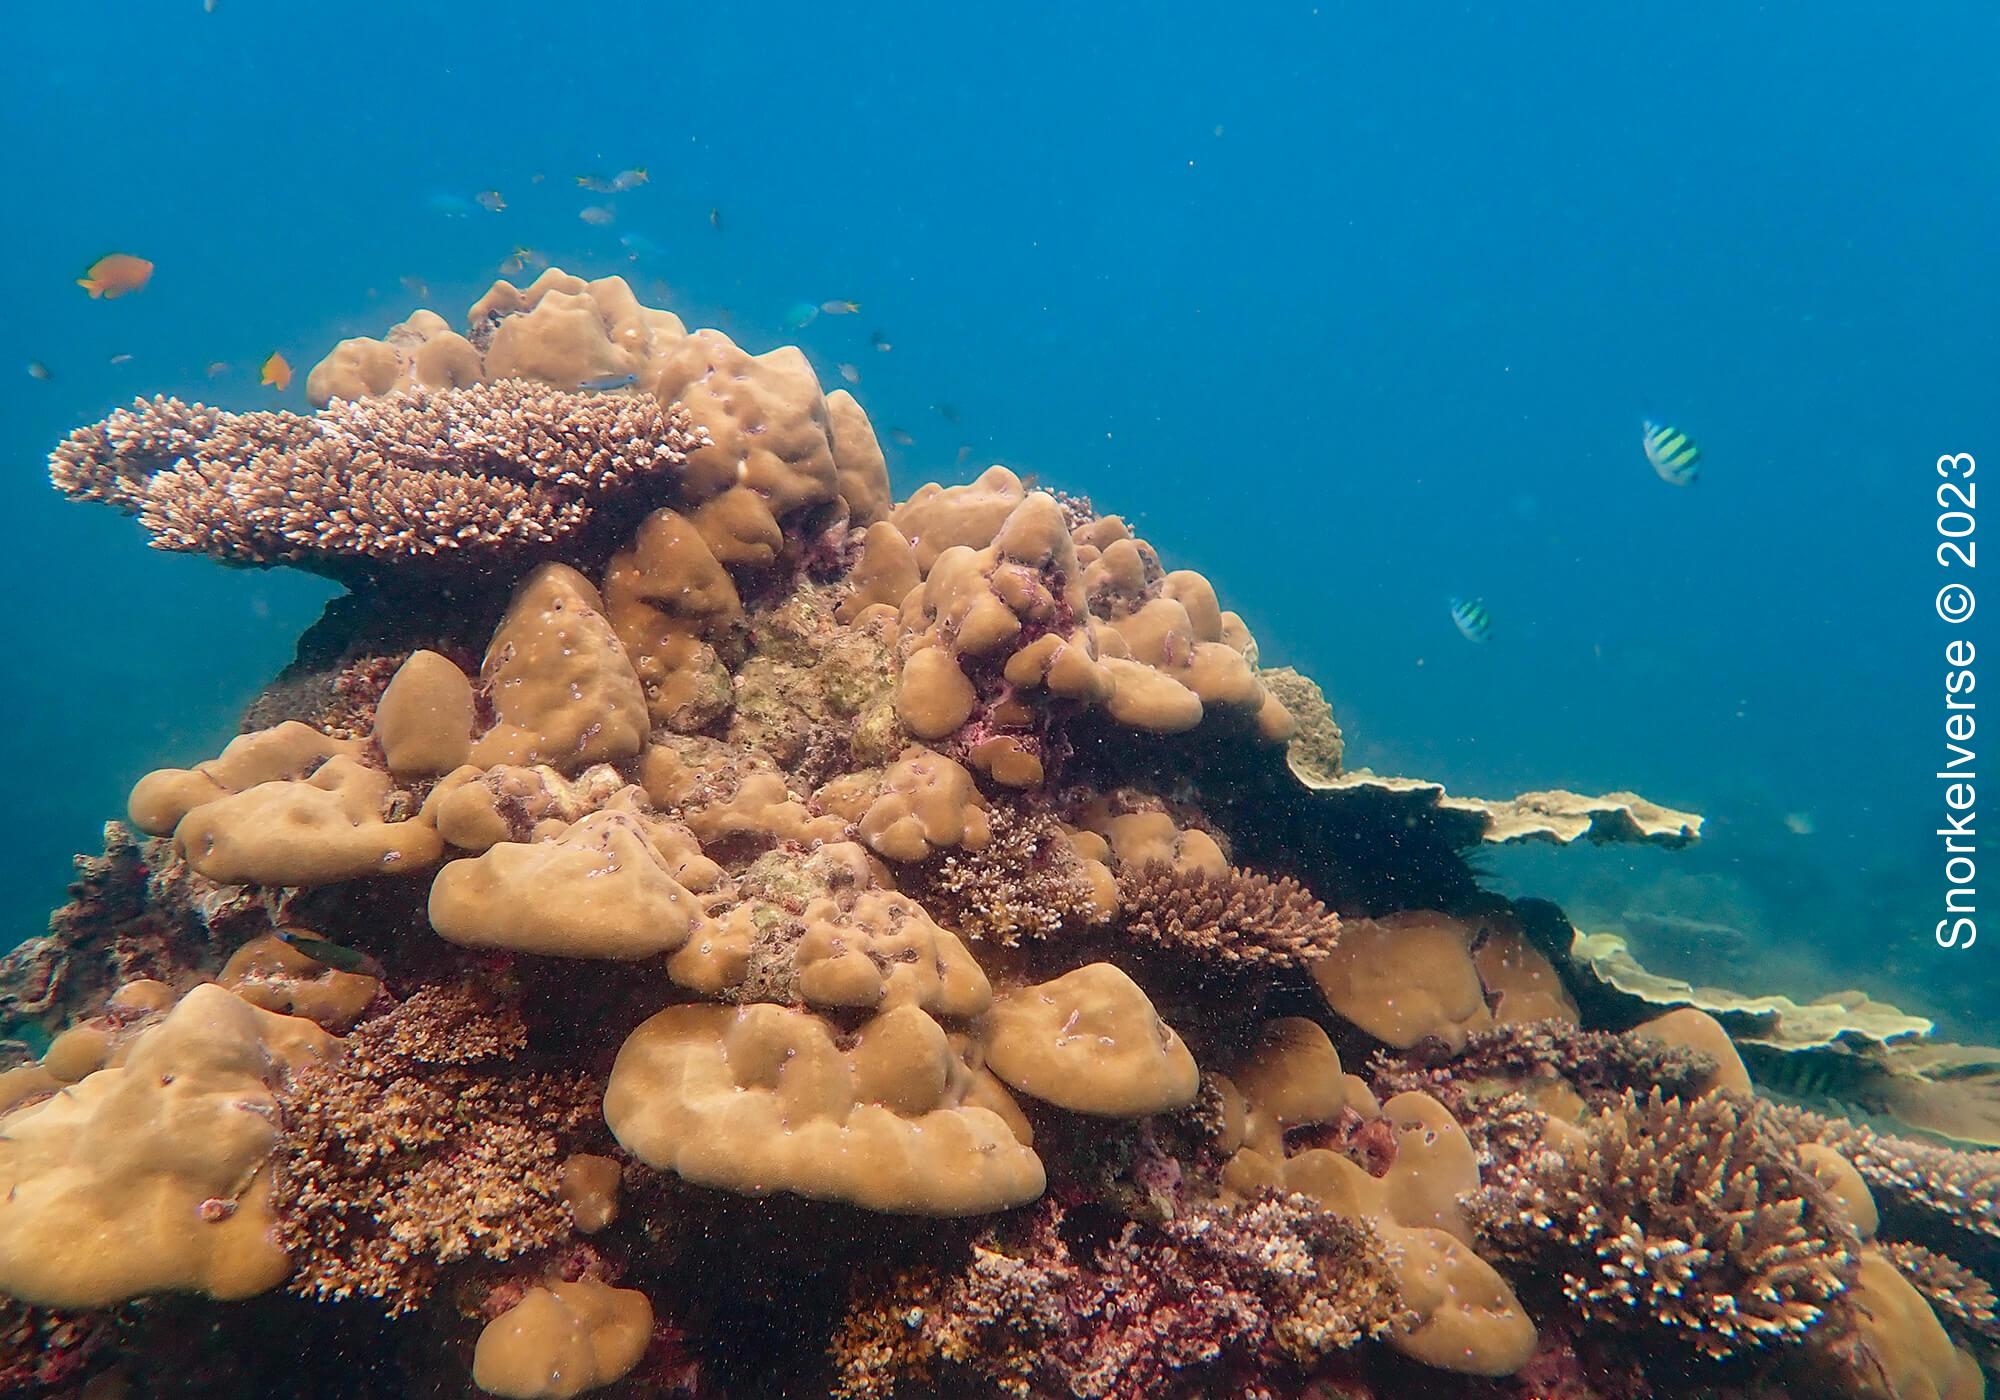 Loh Lana Bay Coral Reef